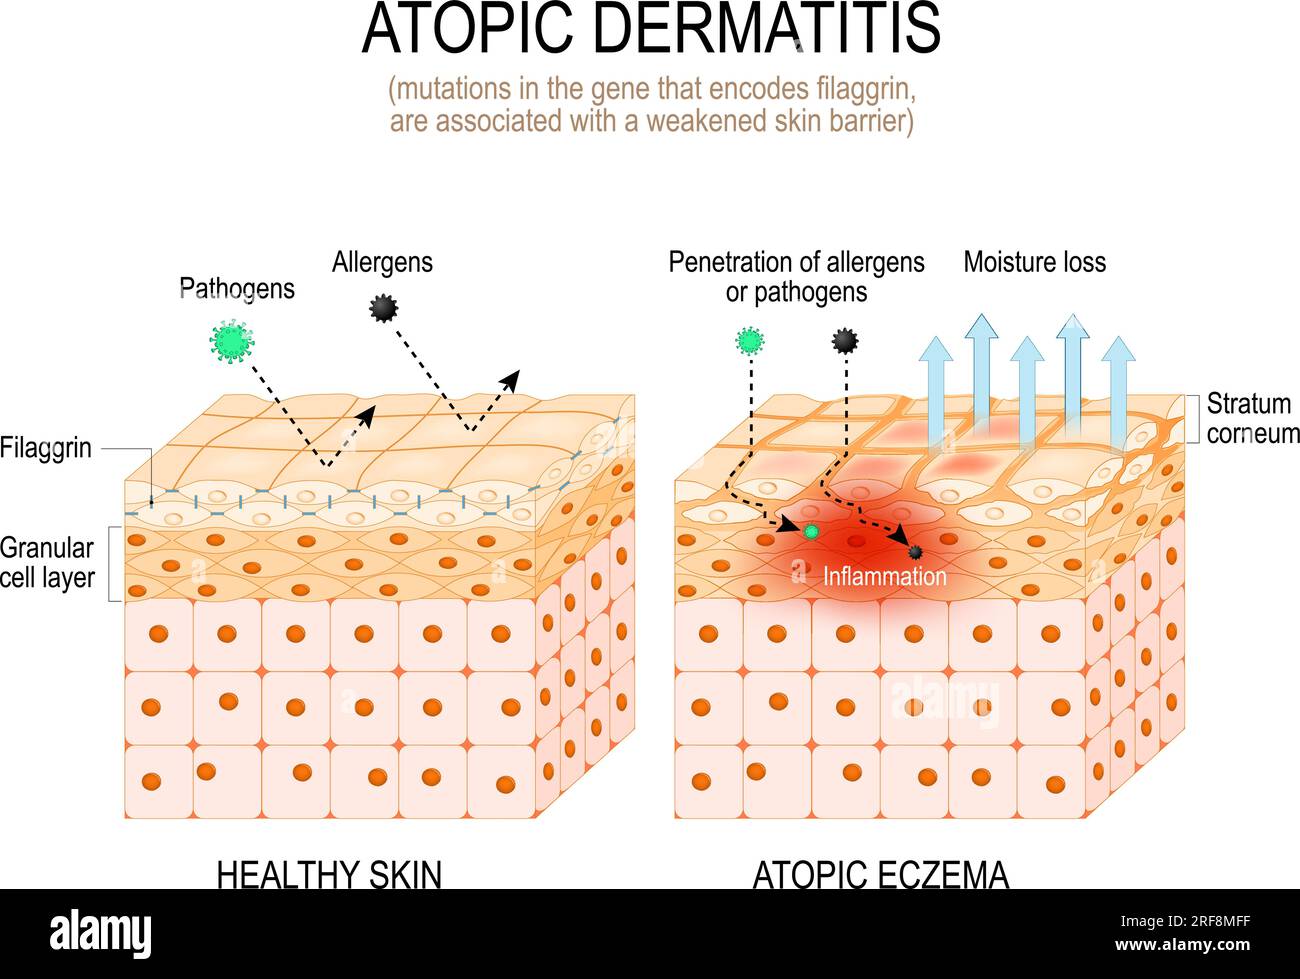 Dermatitis atópica. Teoría de la filaggrina y eczema atópico. las mutaciones en el gen que codifica la filaggrina están asociadas con una barrera cutánea debilitada. Ilustración del Vector